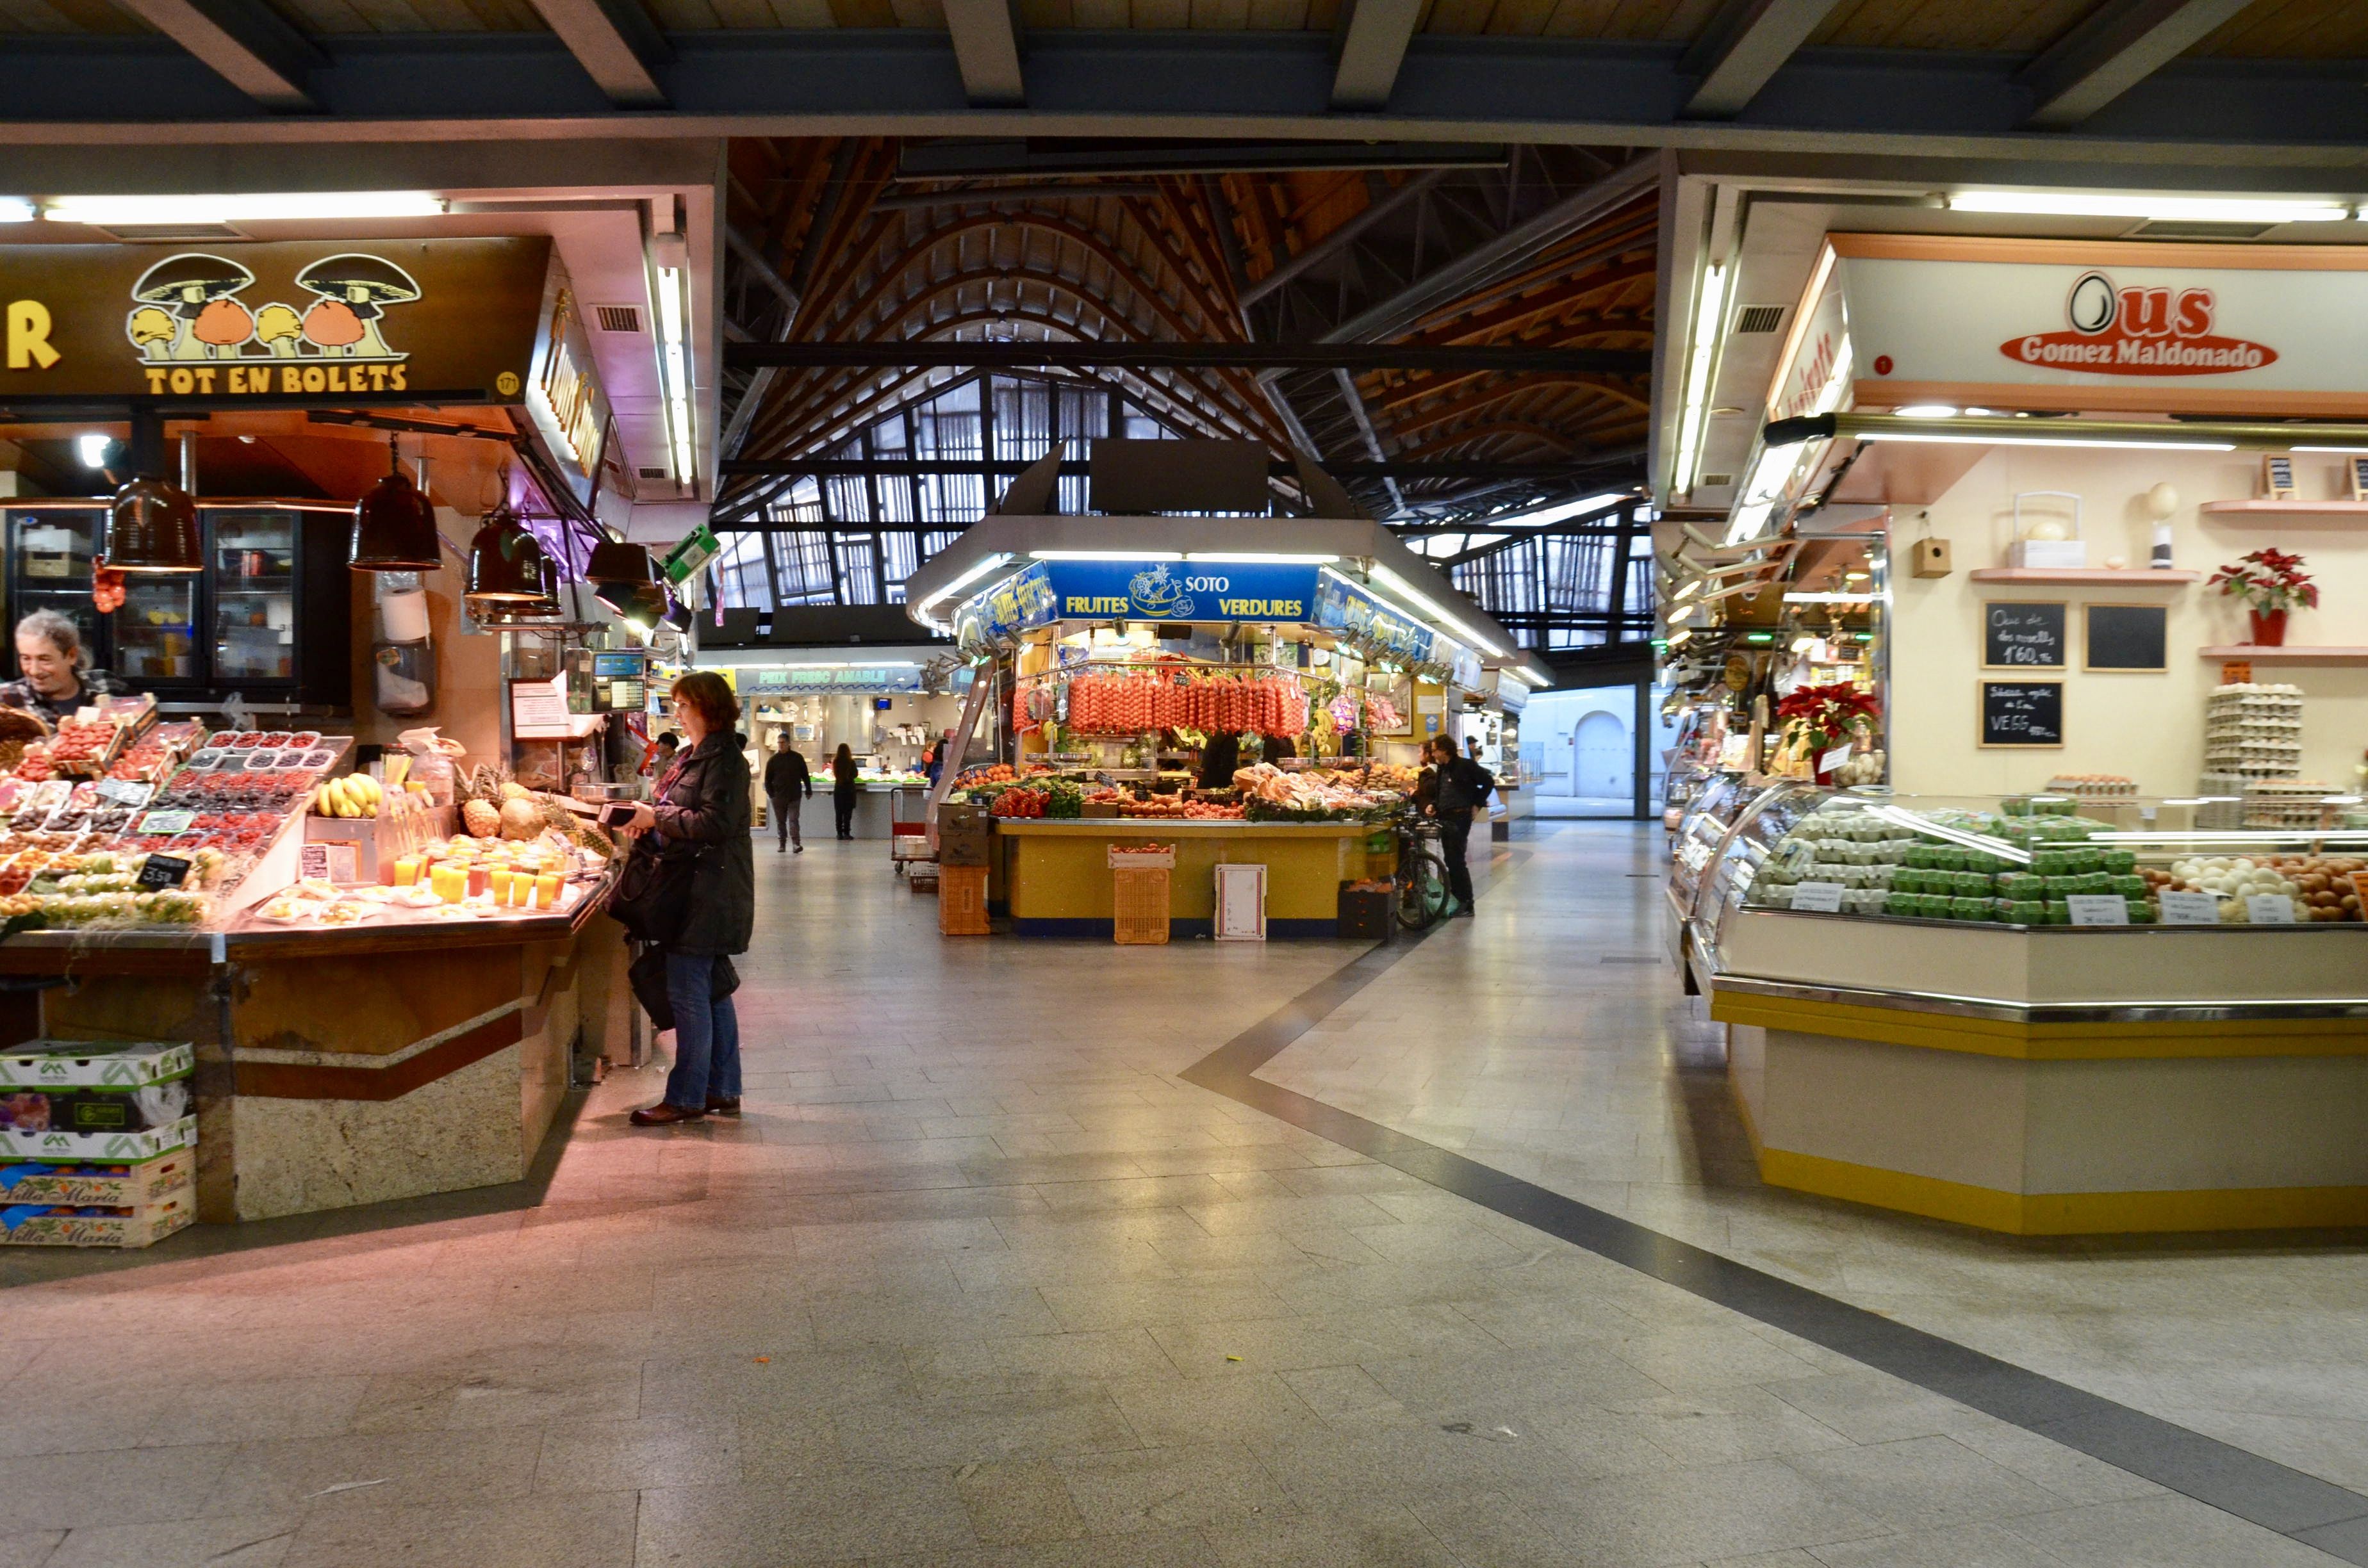 Santa Caterina Market, Barcelona: All year